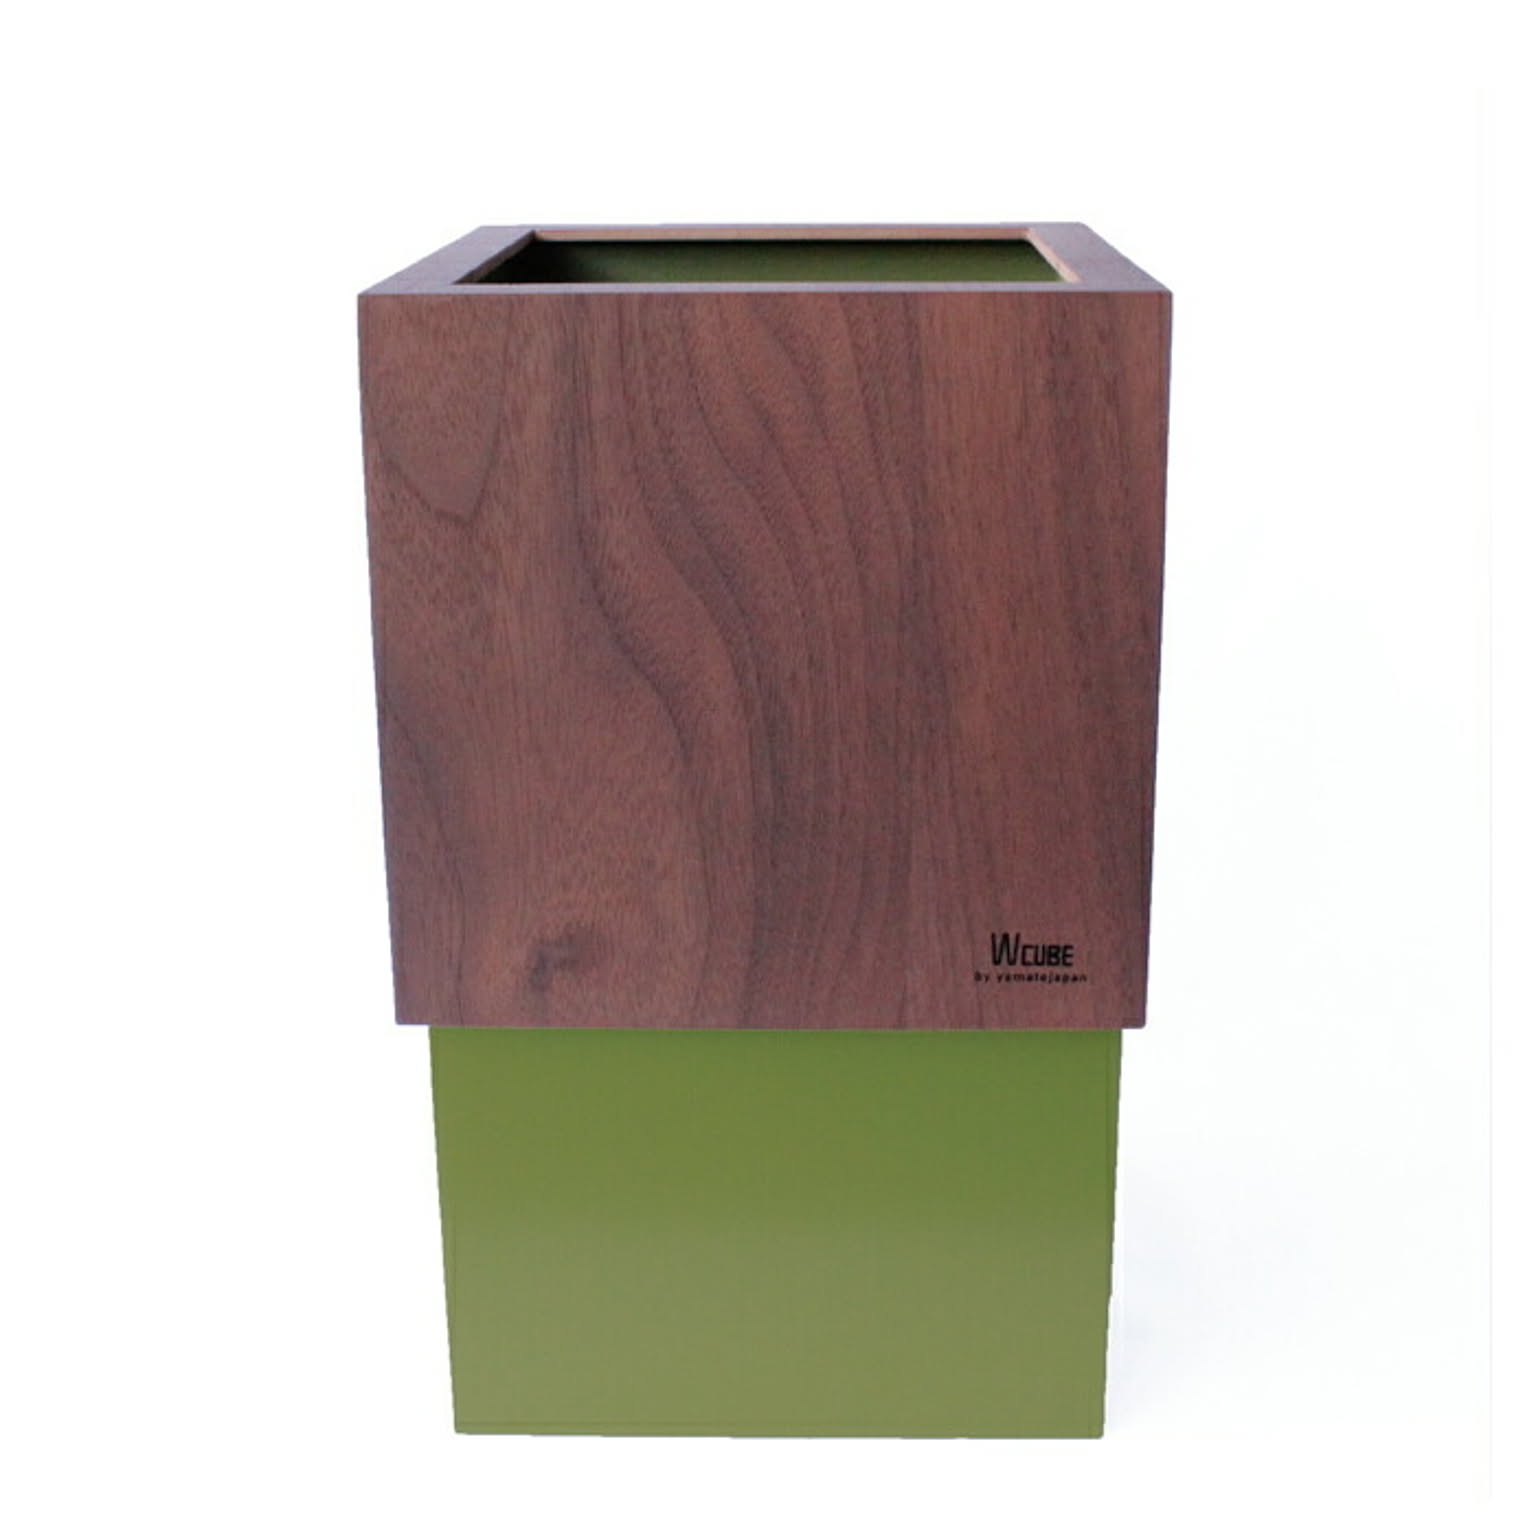 ゴミ箱 ダストボックス 北欧 ごみ箱 日本製 木製 10L ウォールナット シンプル 職人の手作り リビング W CUBE ヤマト工芸